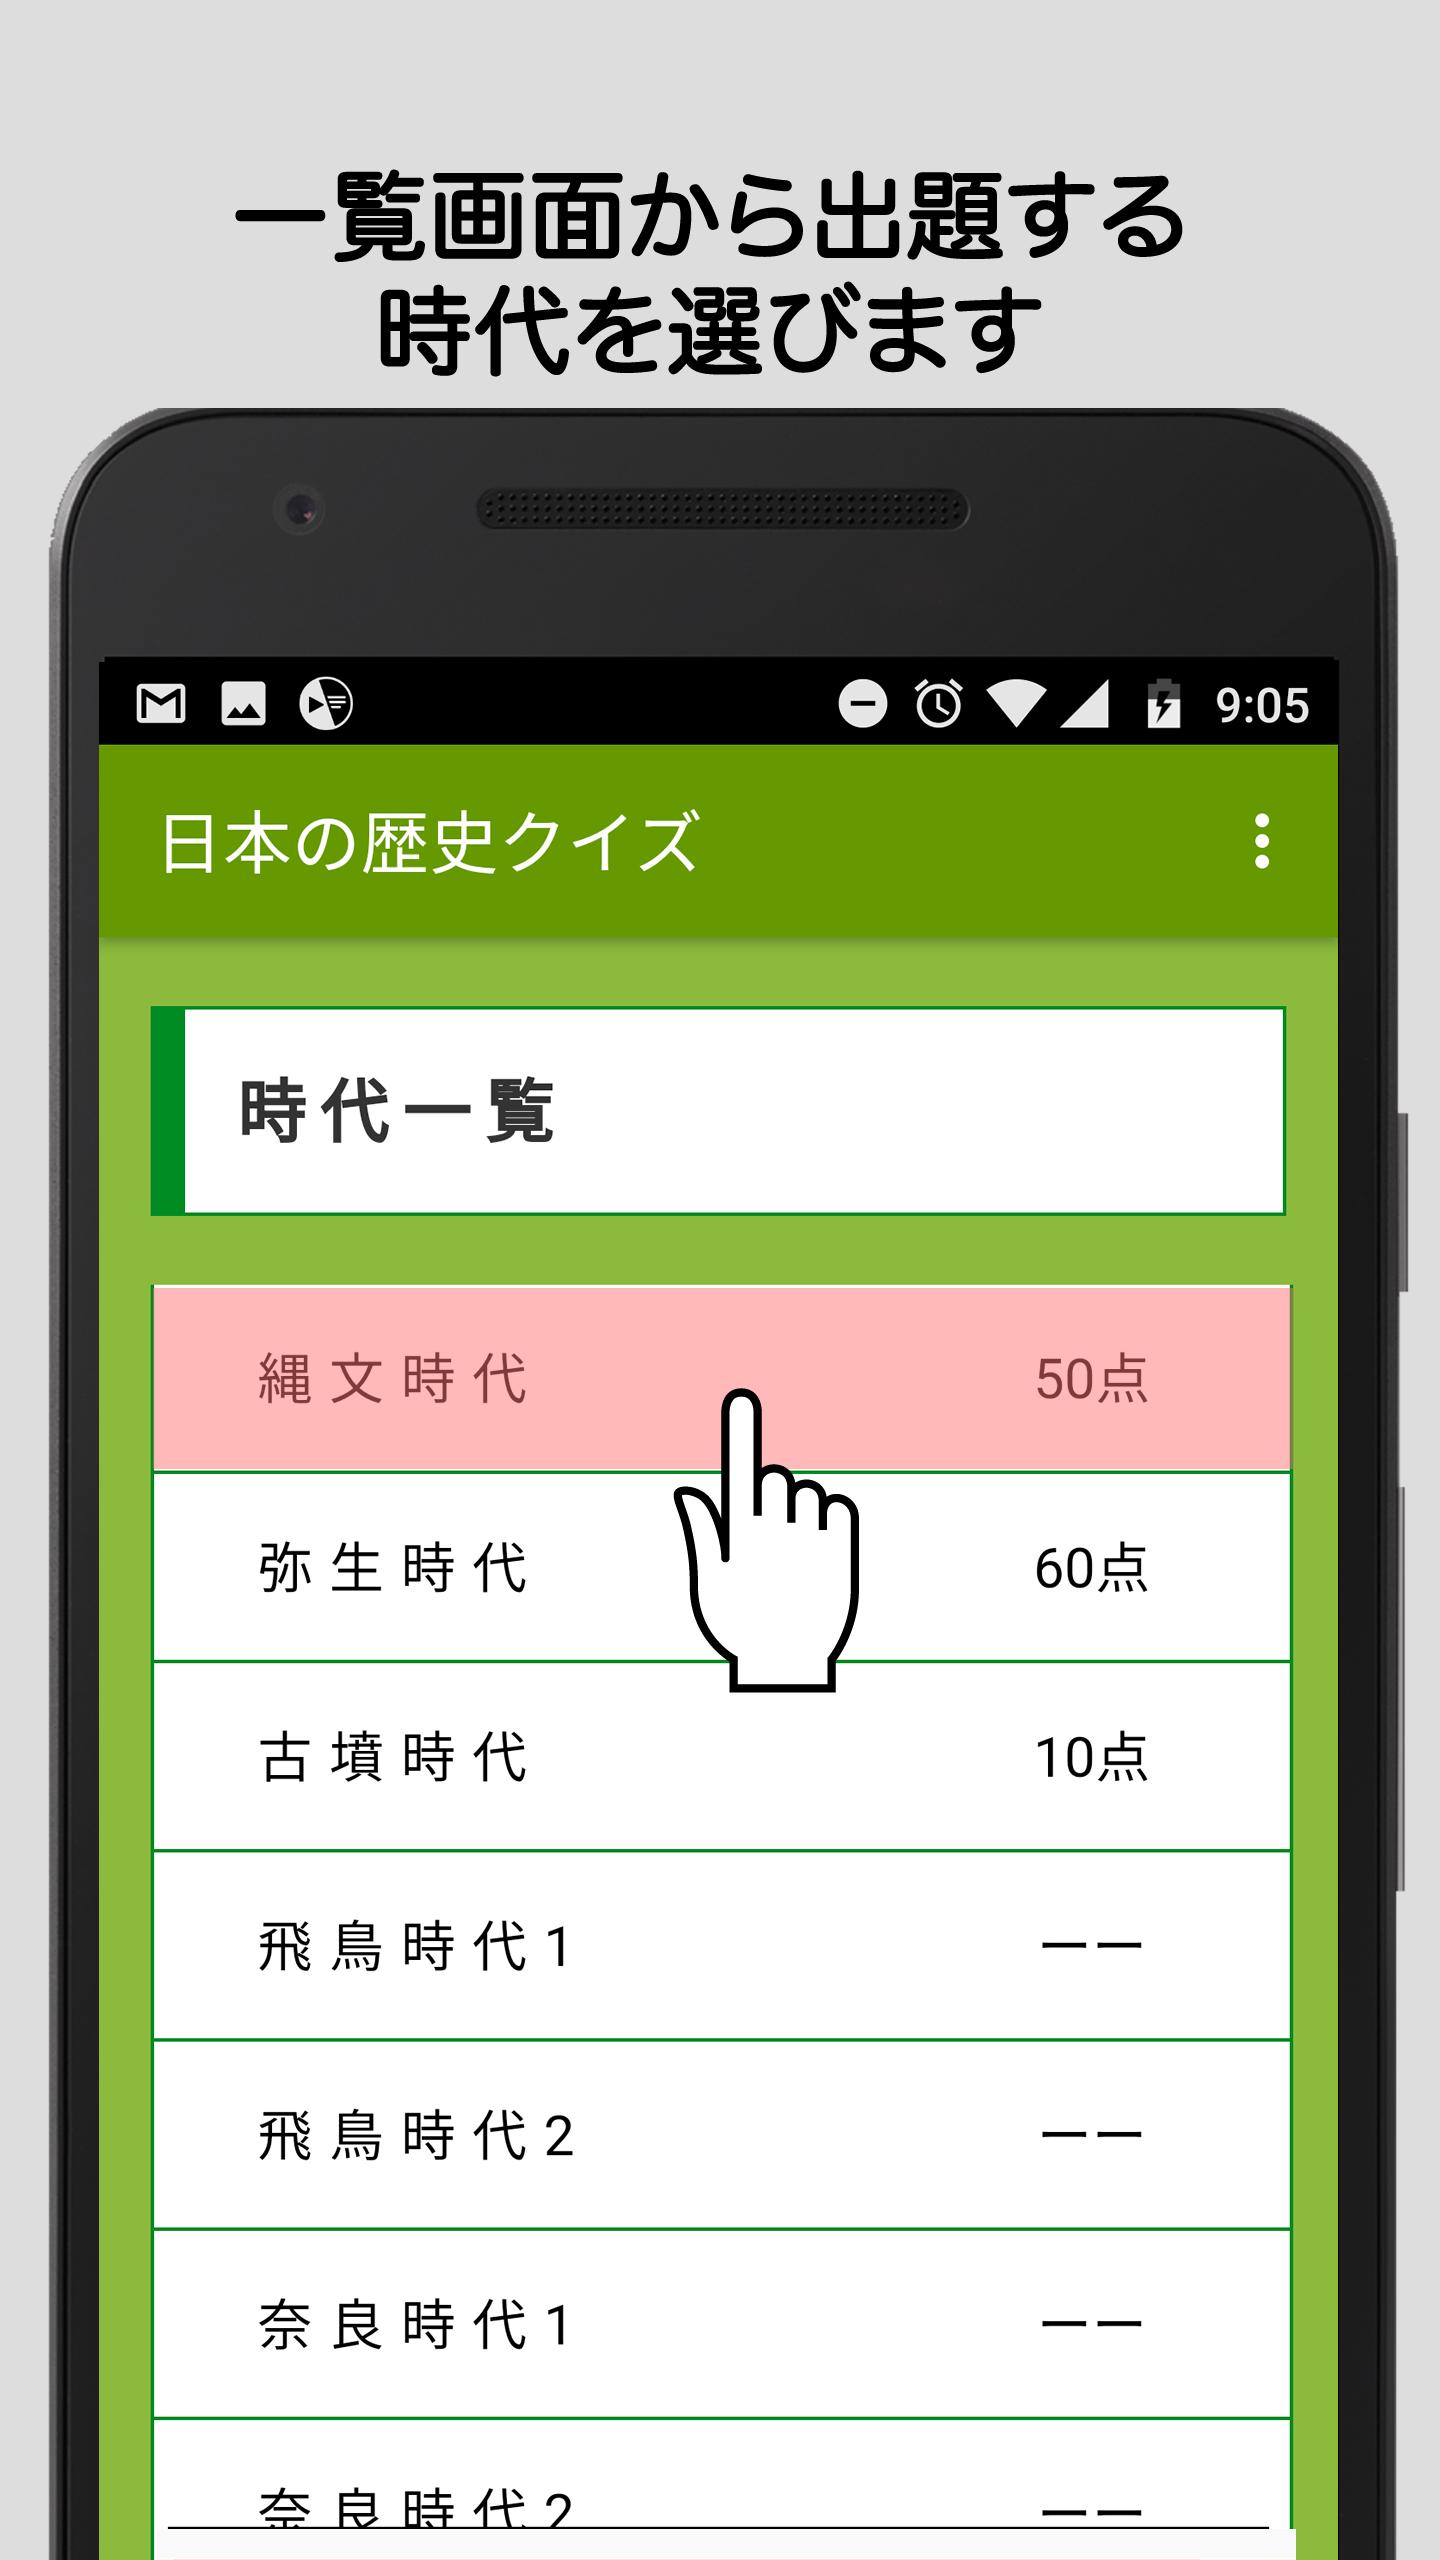 中学生向け日本の歴史クイズ For Android Apk Download